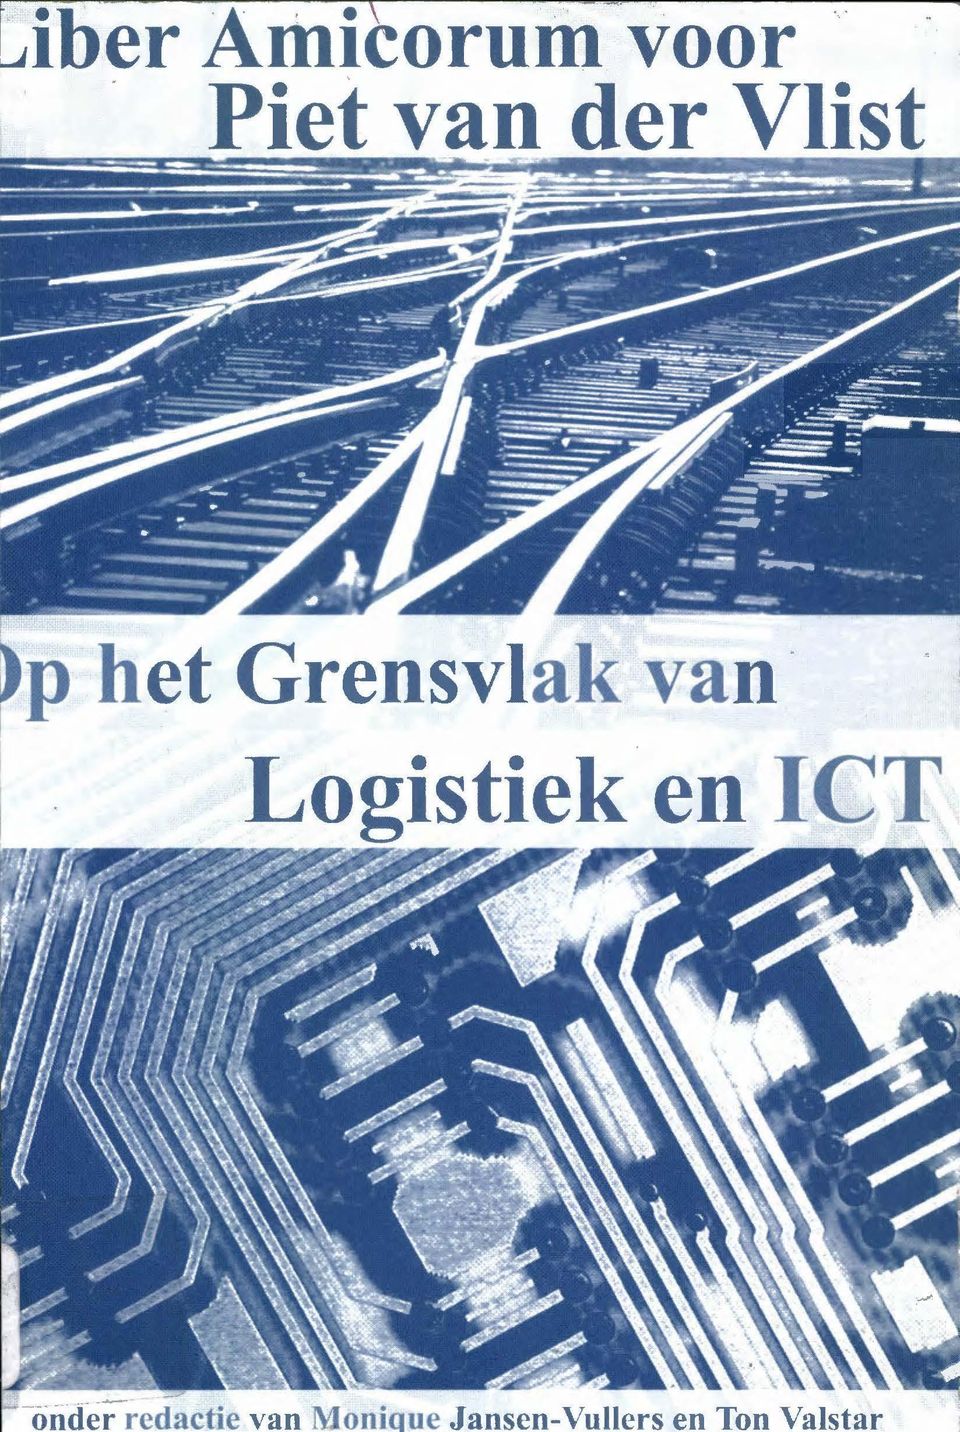 Logistiek en ICT. ",(' -.